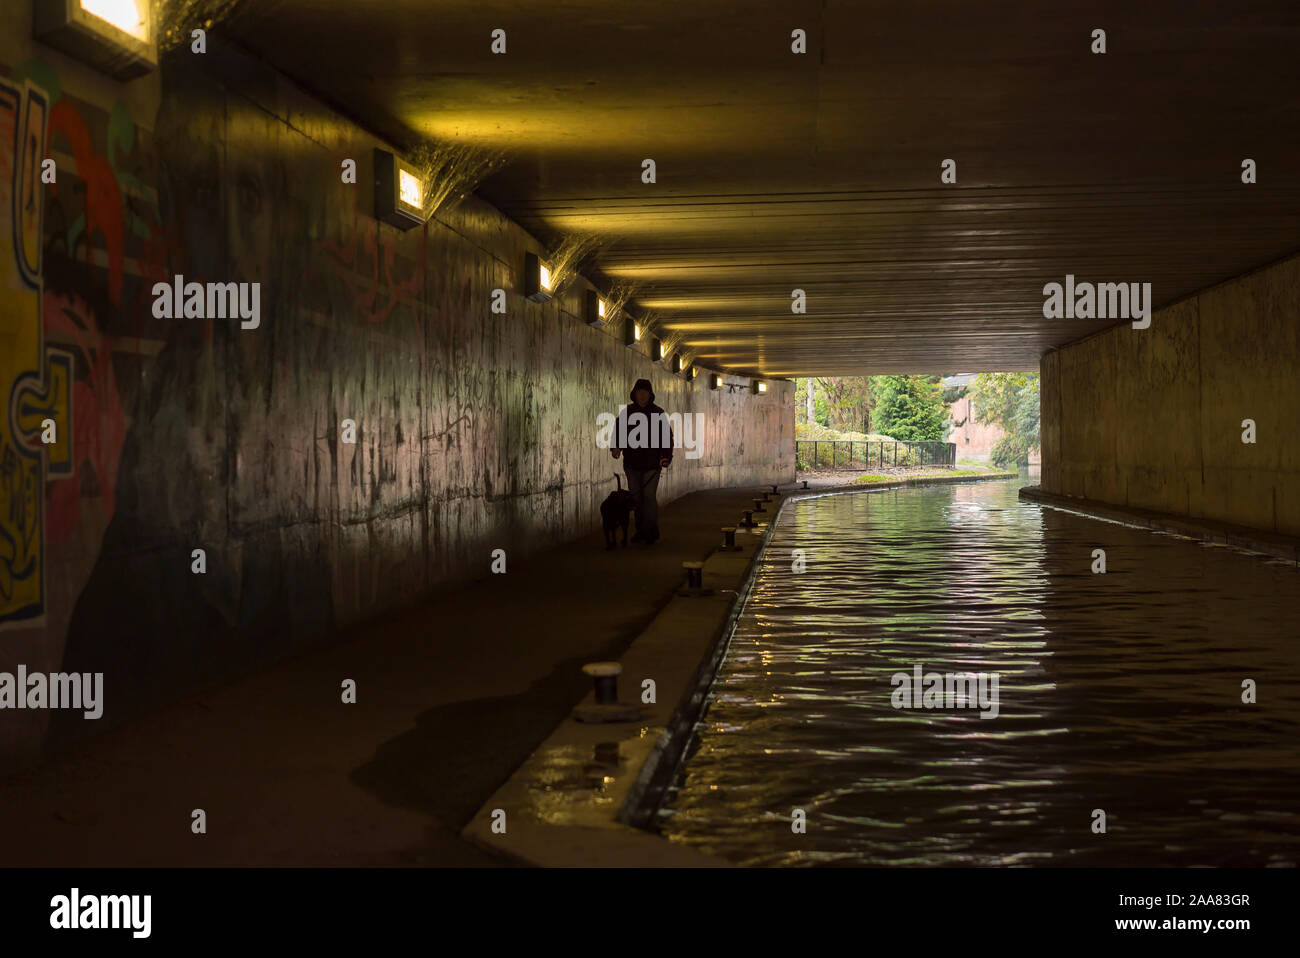 Personnage isolé et solitaire marchant le chien par le canal urbain dans un passage souterrain sombre et piétonnier du Royaume-Uni, en passant par les œuvres d'art du graffiti urbain pulvérisé sur les murs. Banque D'Images